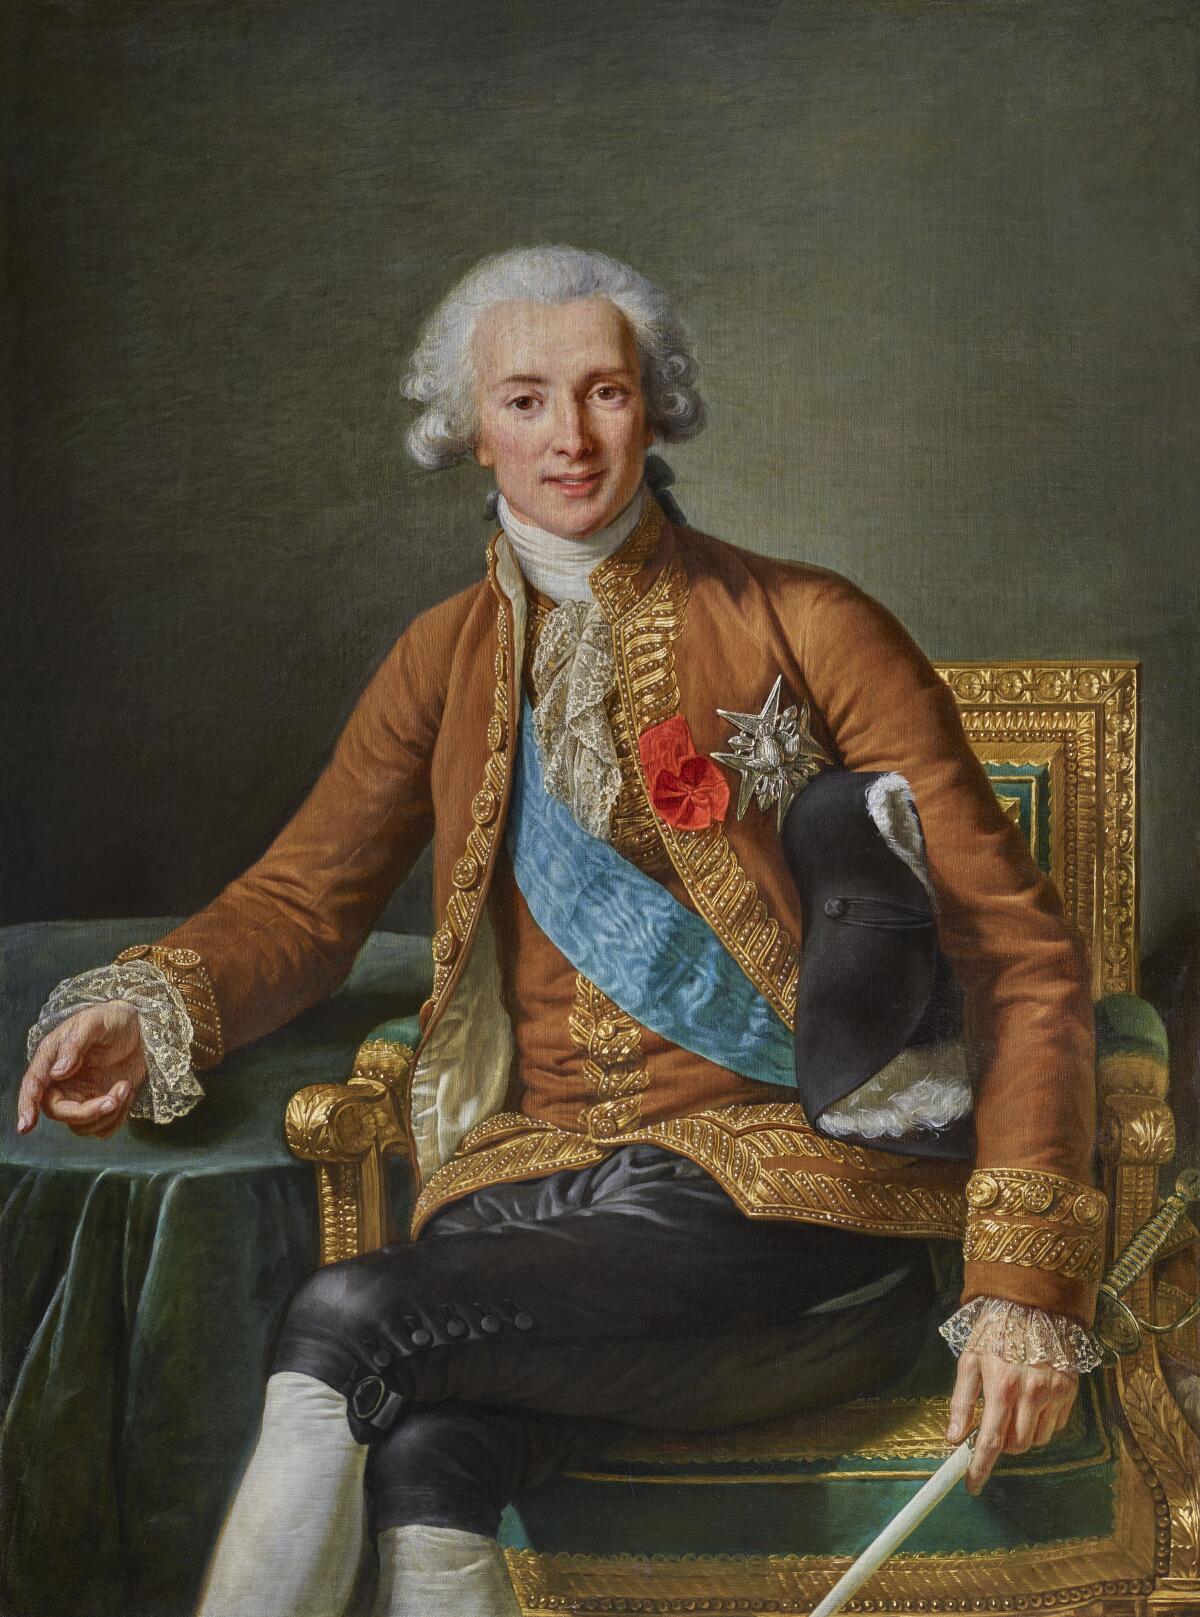 A 1784 portrait of a man